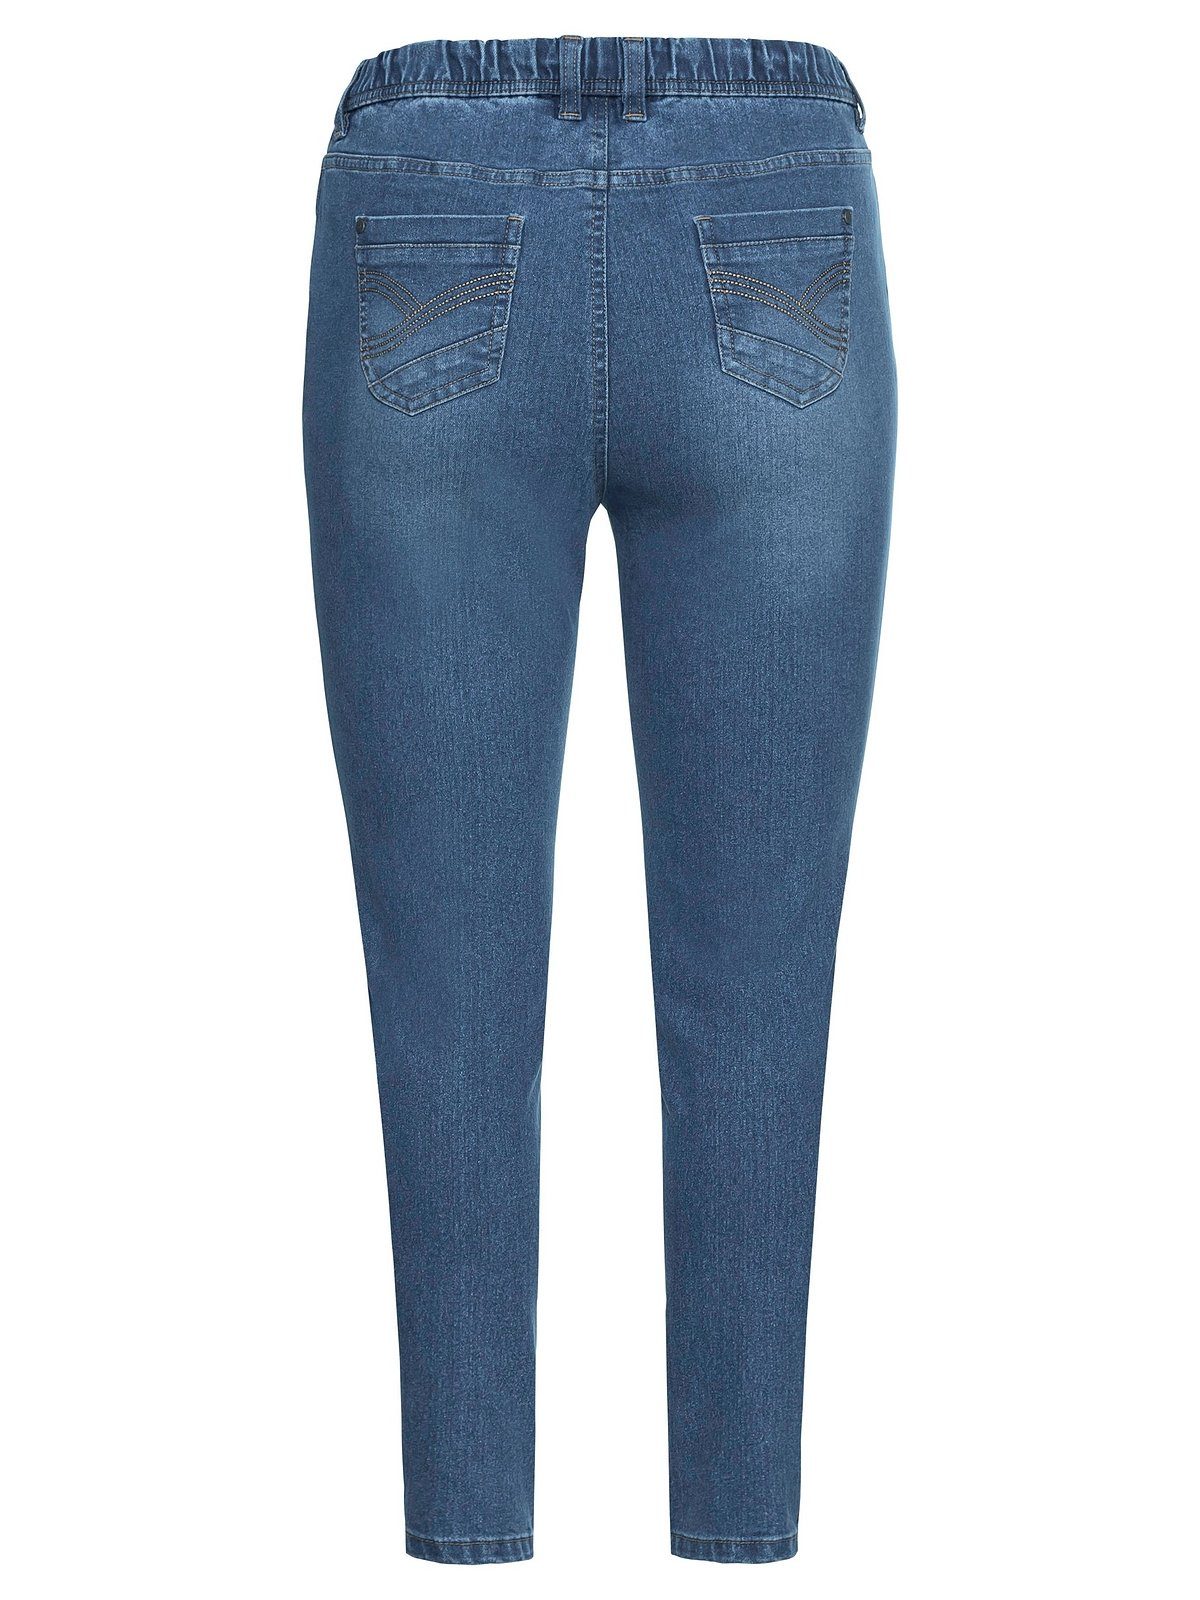 Sheego Stretch-Jeans Große Größen Denim mit Gummibund used Gürtelschlaufen und light blue